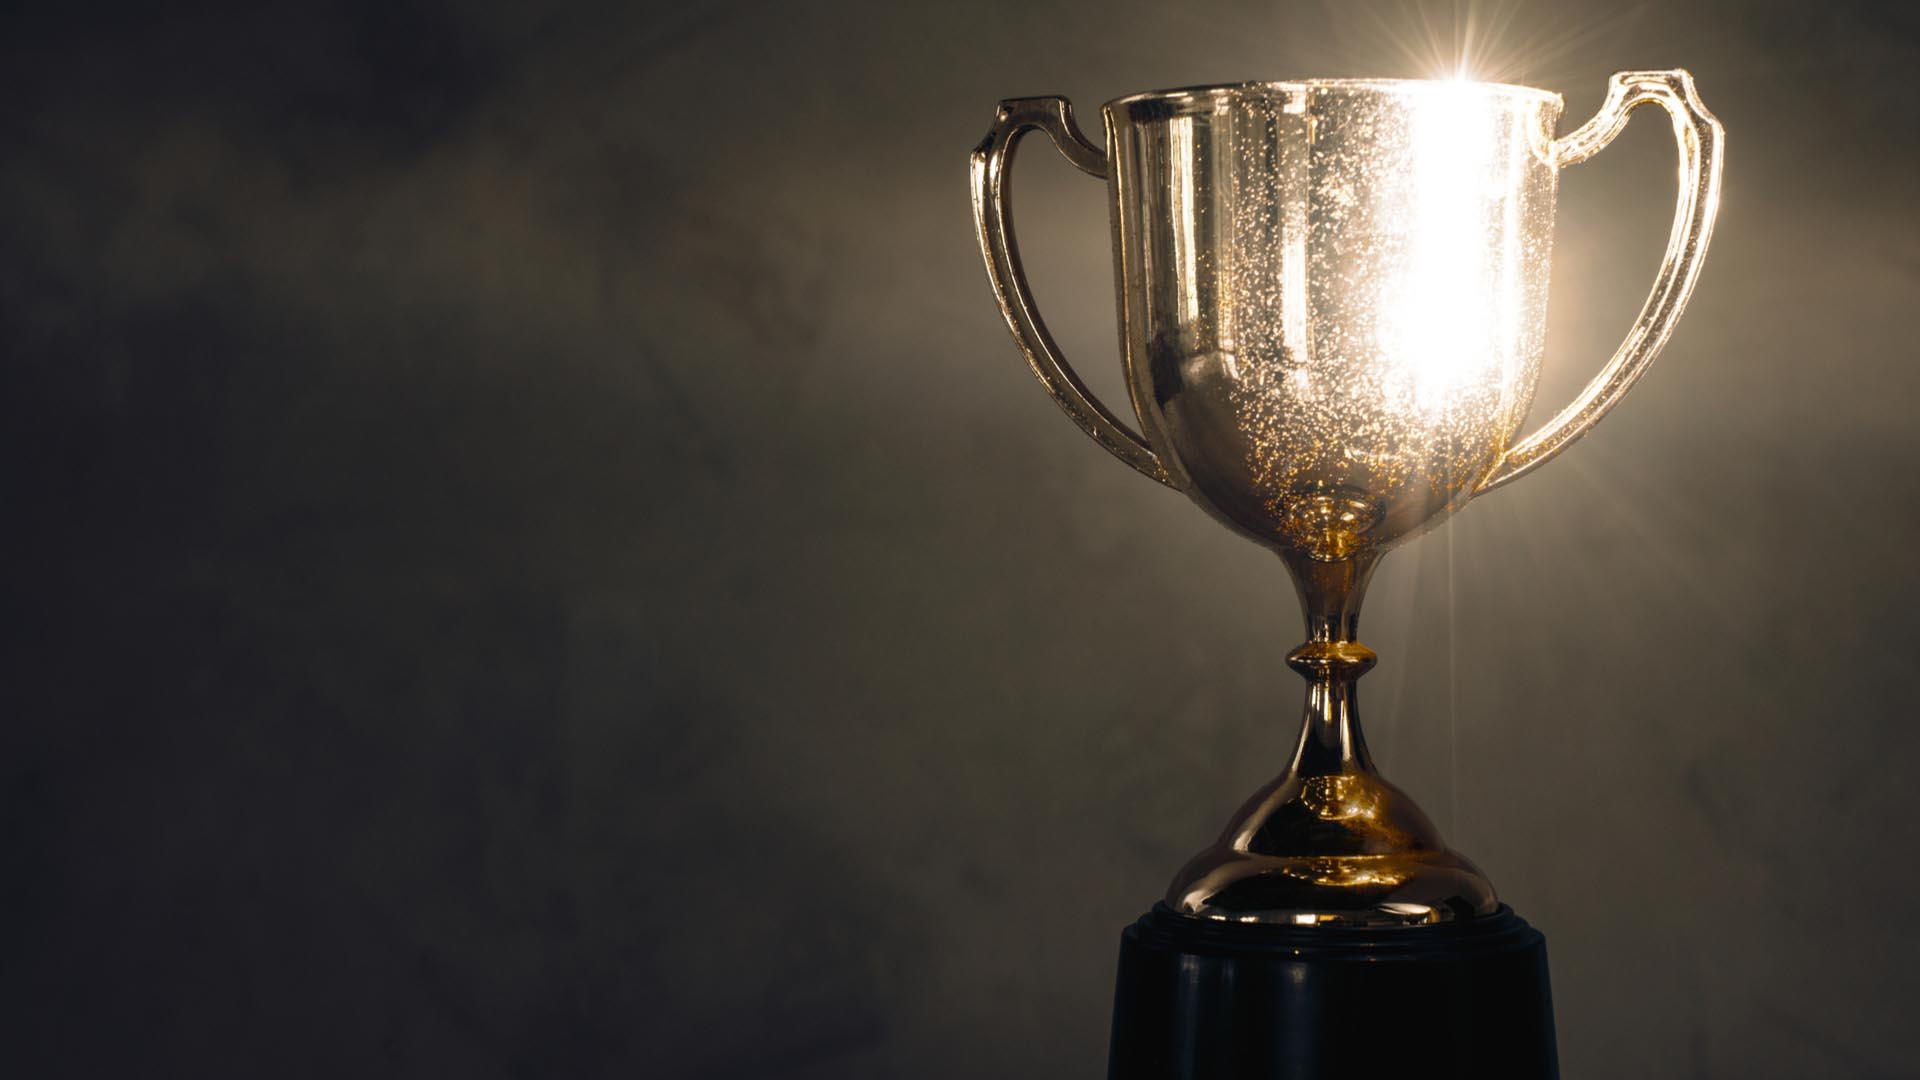 LinkedIn Talent Awards Italia 2019: premiate le aziende con la migliore strategia di recruiting